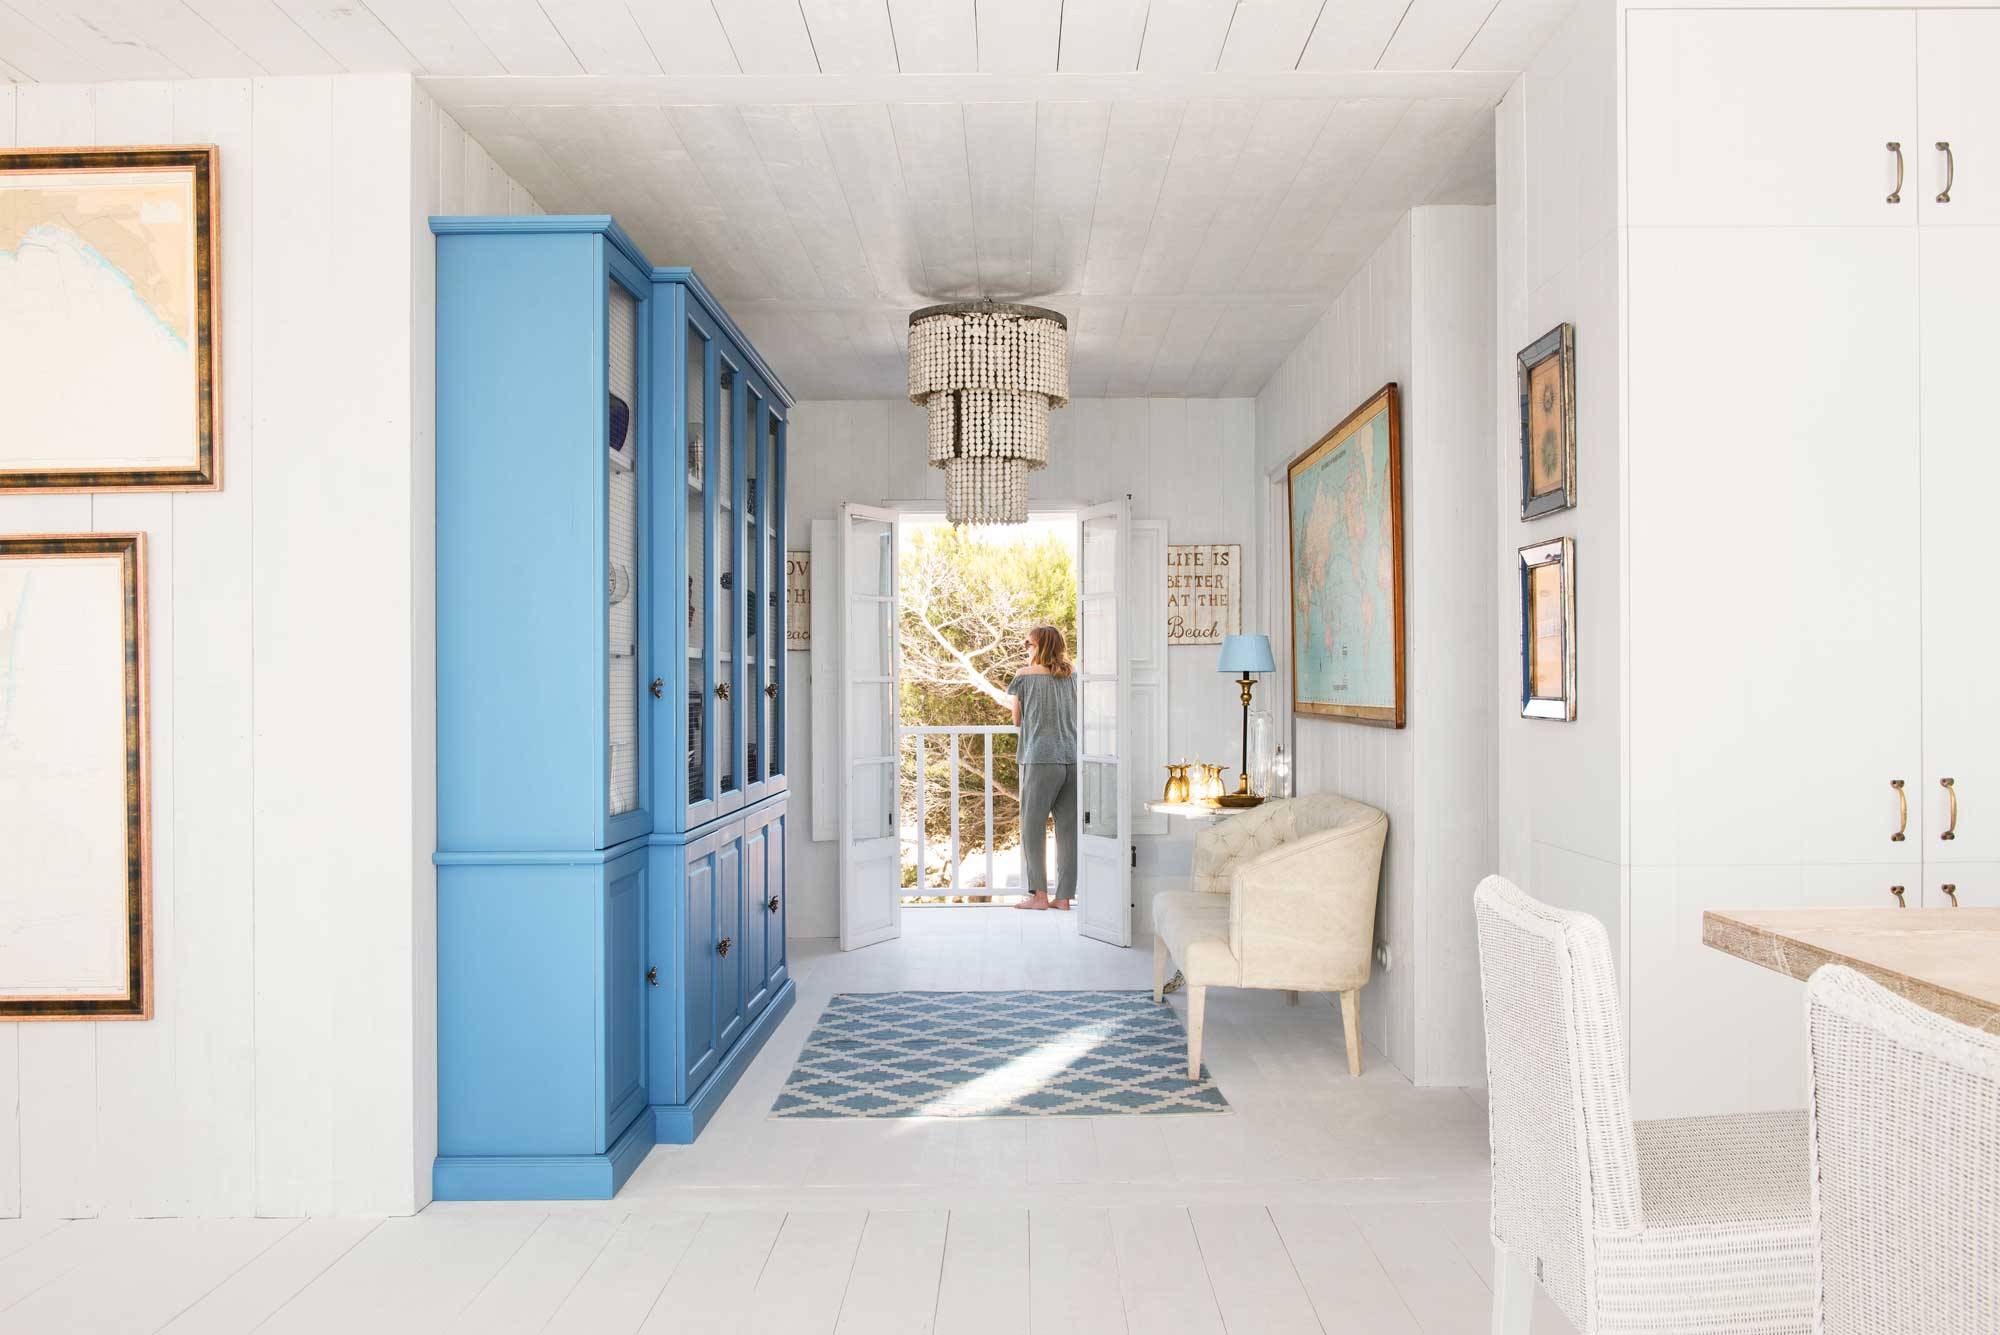 Recibidor con alacenas pintadas en color azul con paredes y suelos en color blanco.